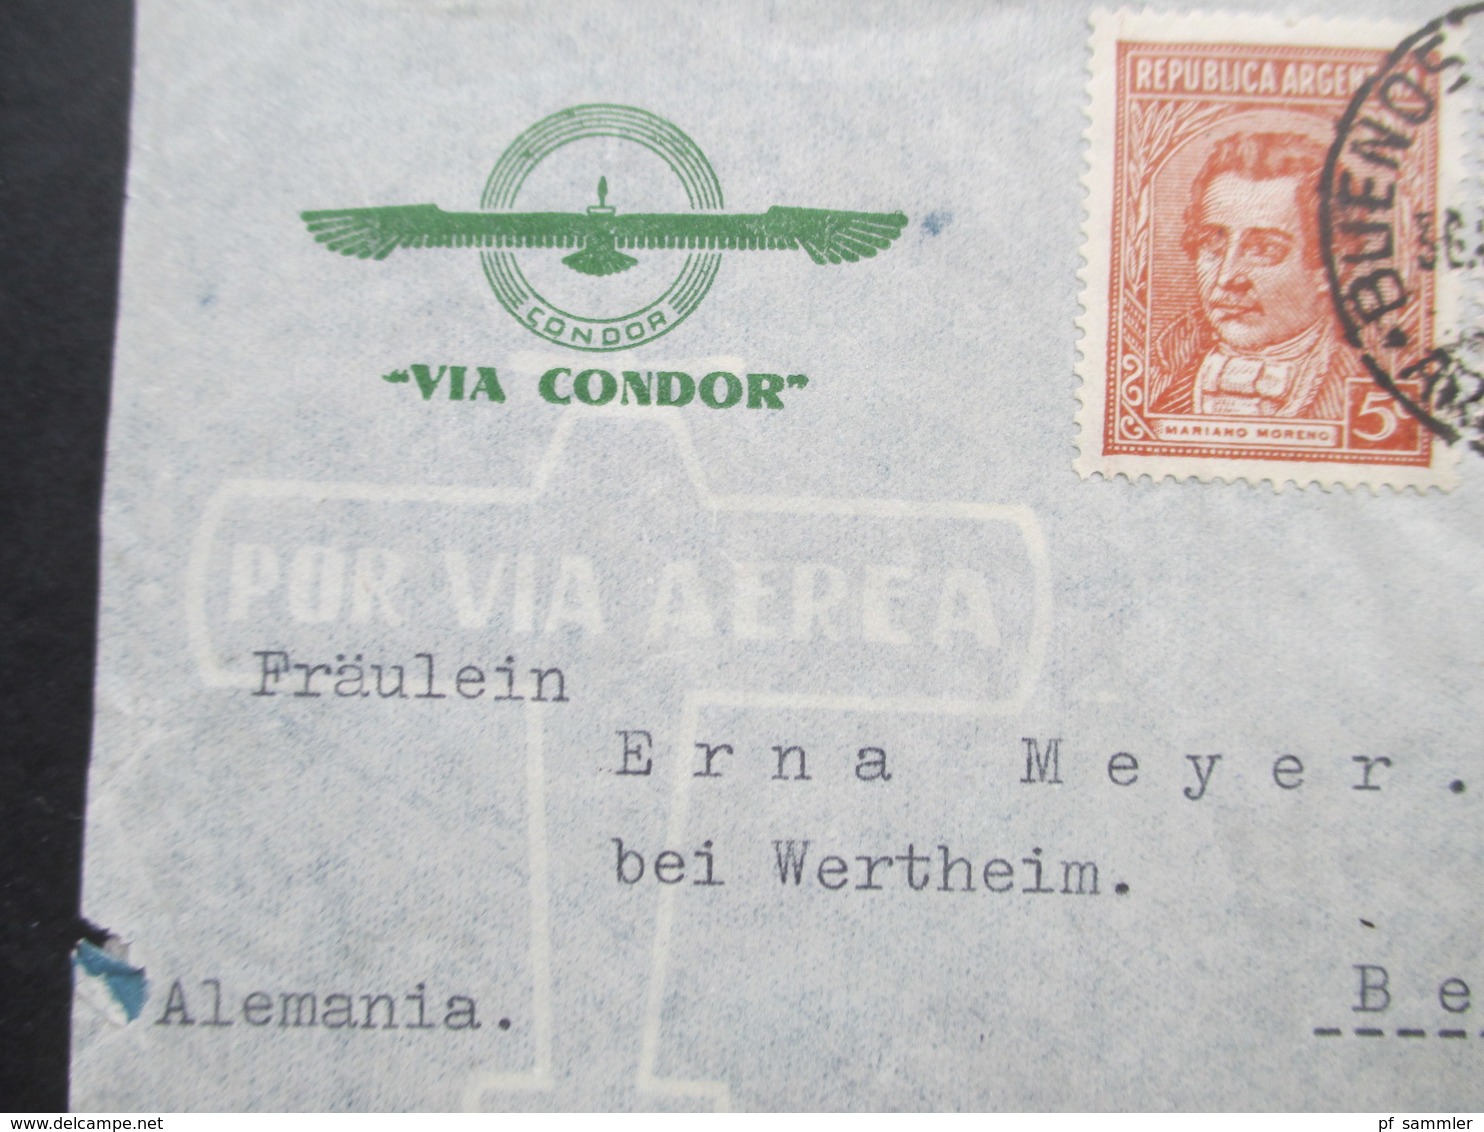 Argentinien 1940 Zensurpost Luftpost Via Condor Mit Mehrfachzensur Der Wehrmacht OKW Verschlussstreifen Geöffnet - Storia Postale